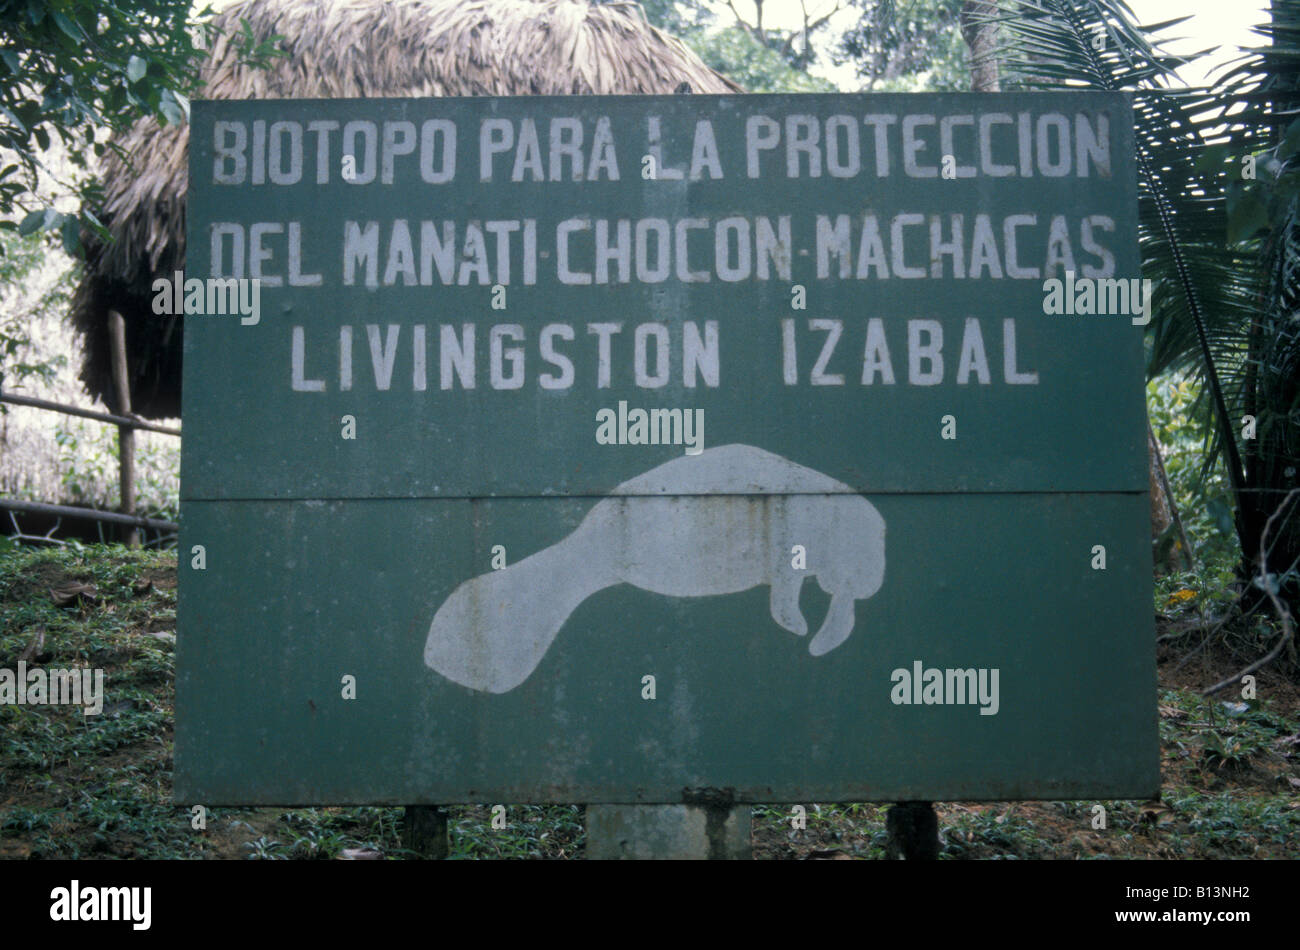 Firmare all'entrata del biotopo Chocon Machacas lamantino riserva sul Rio Dulce, Guatemala Foto Stock